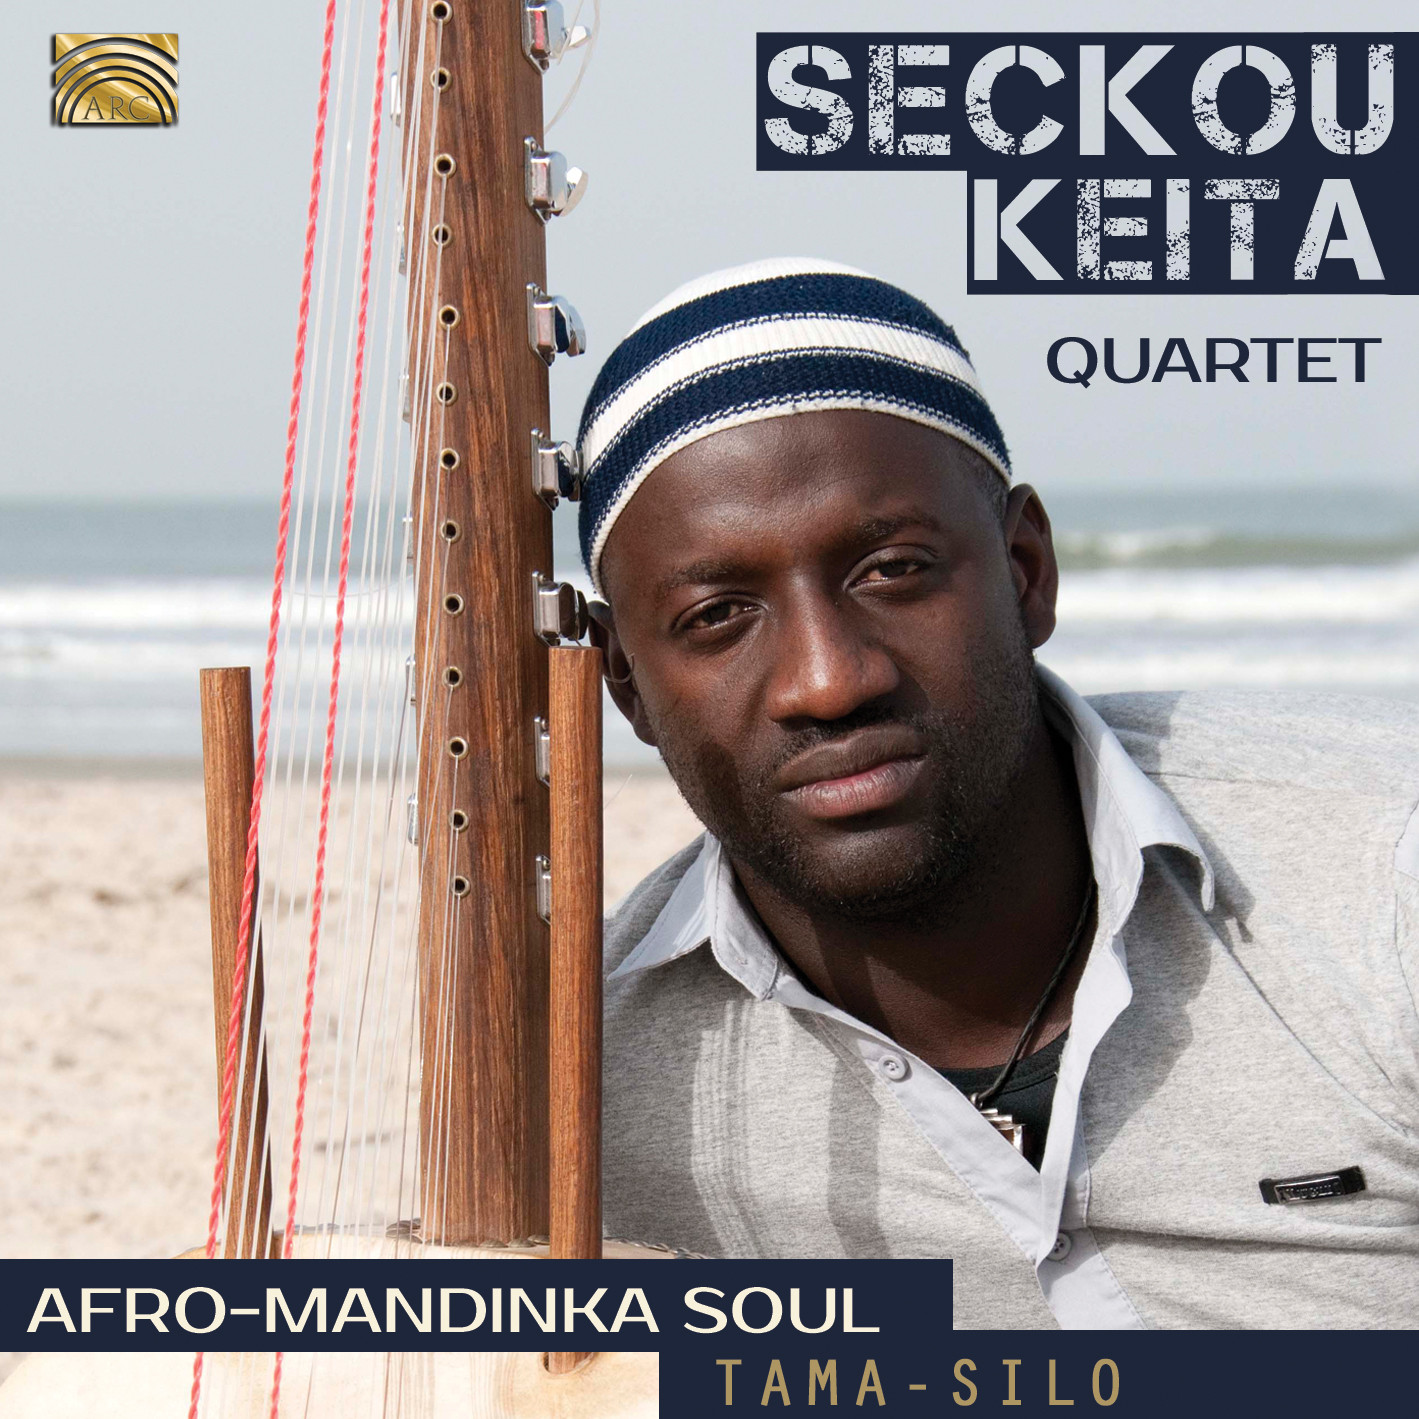 EUCD2489 Afro-Mandinka Soul - Tama-Silo - Seckou Keita Quartet